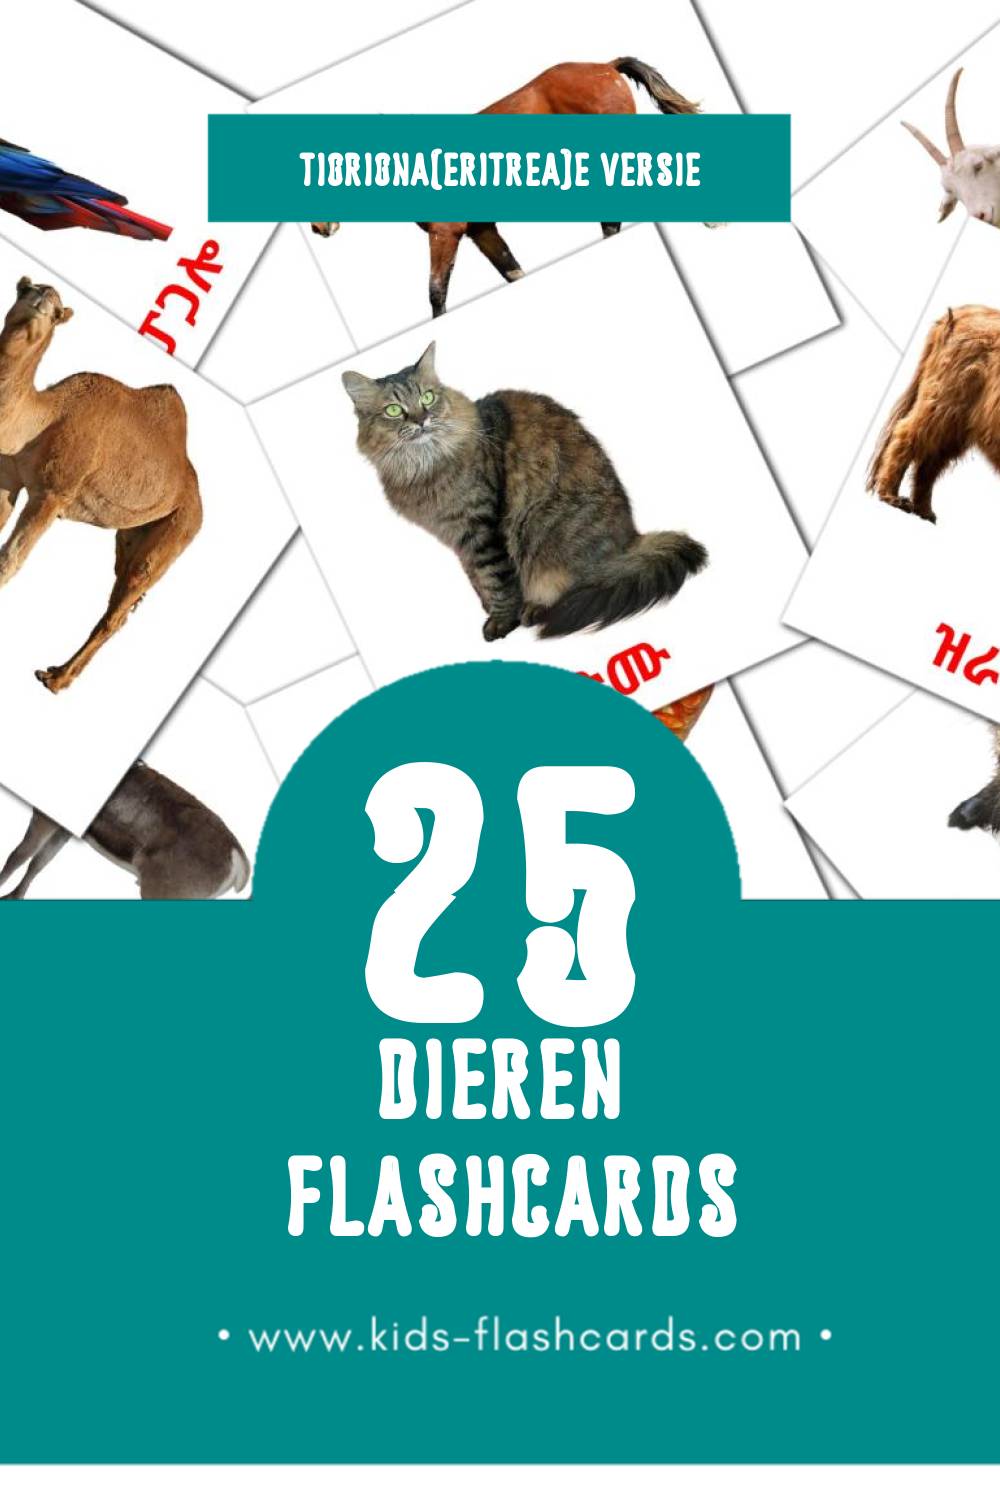 Visuele እንስሳታት Flashcards voor Kleuters (25 kaarten in het Tigrigna(eritrea))